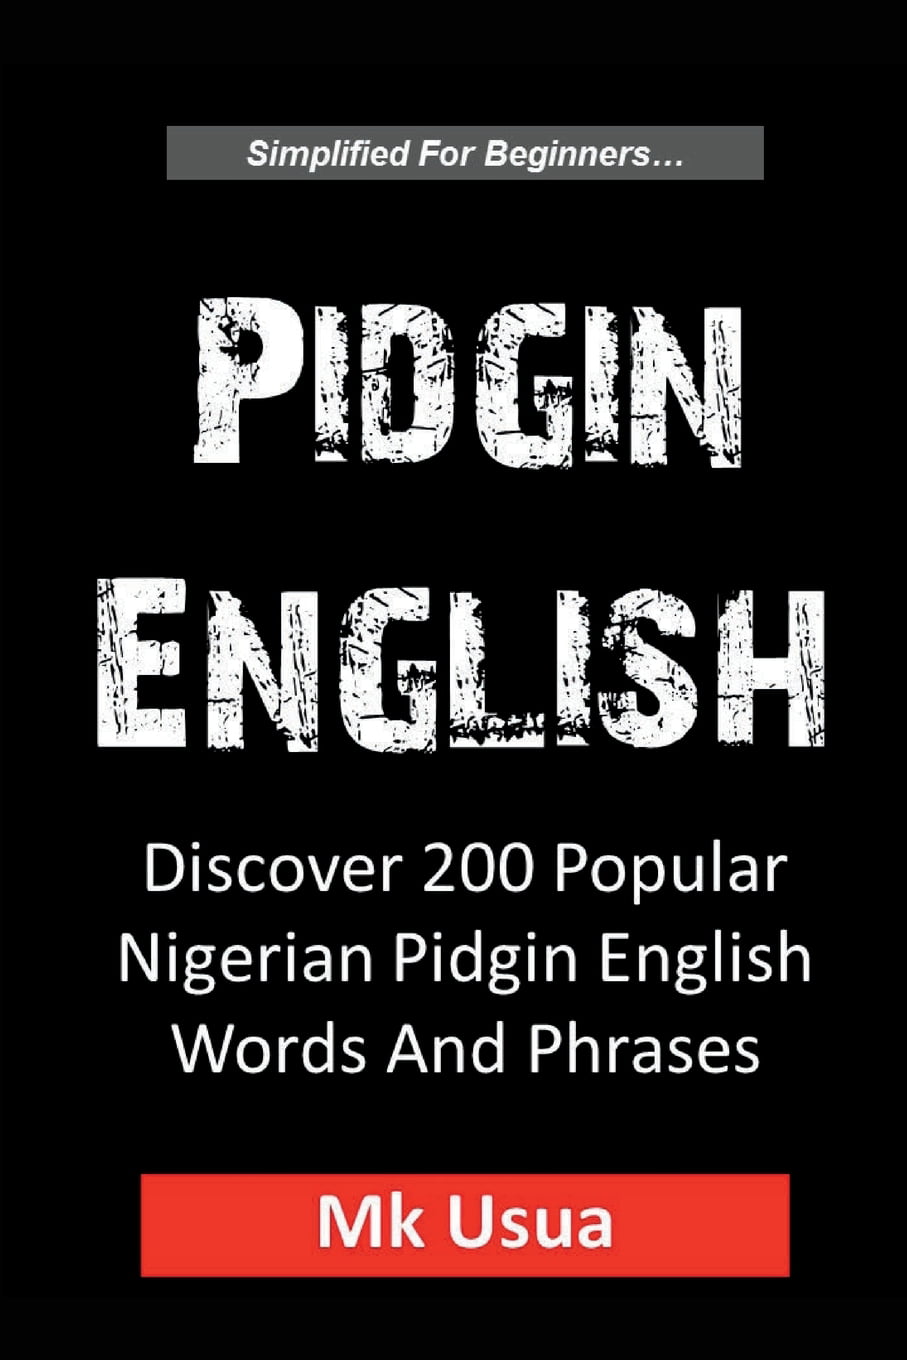 african pidgin language